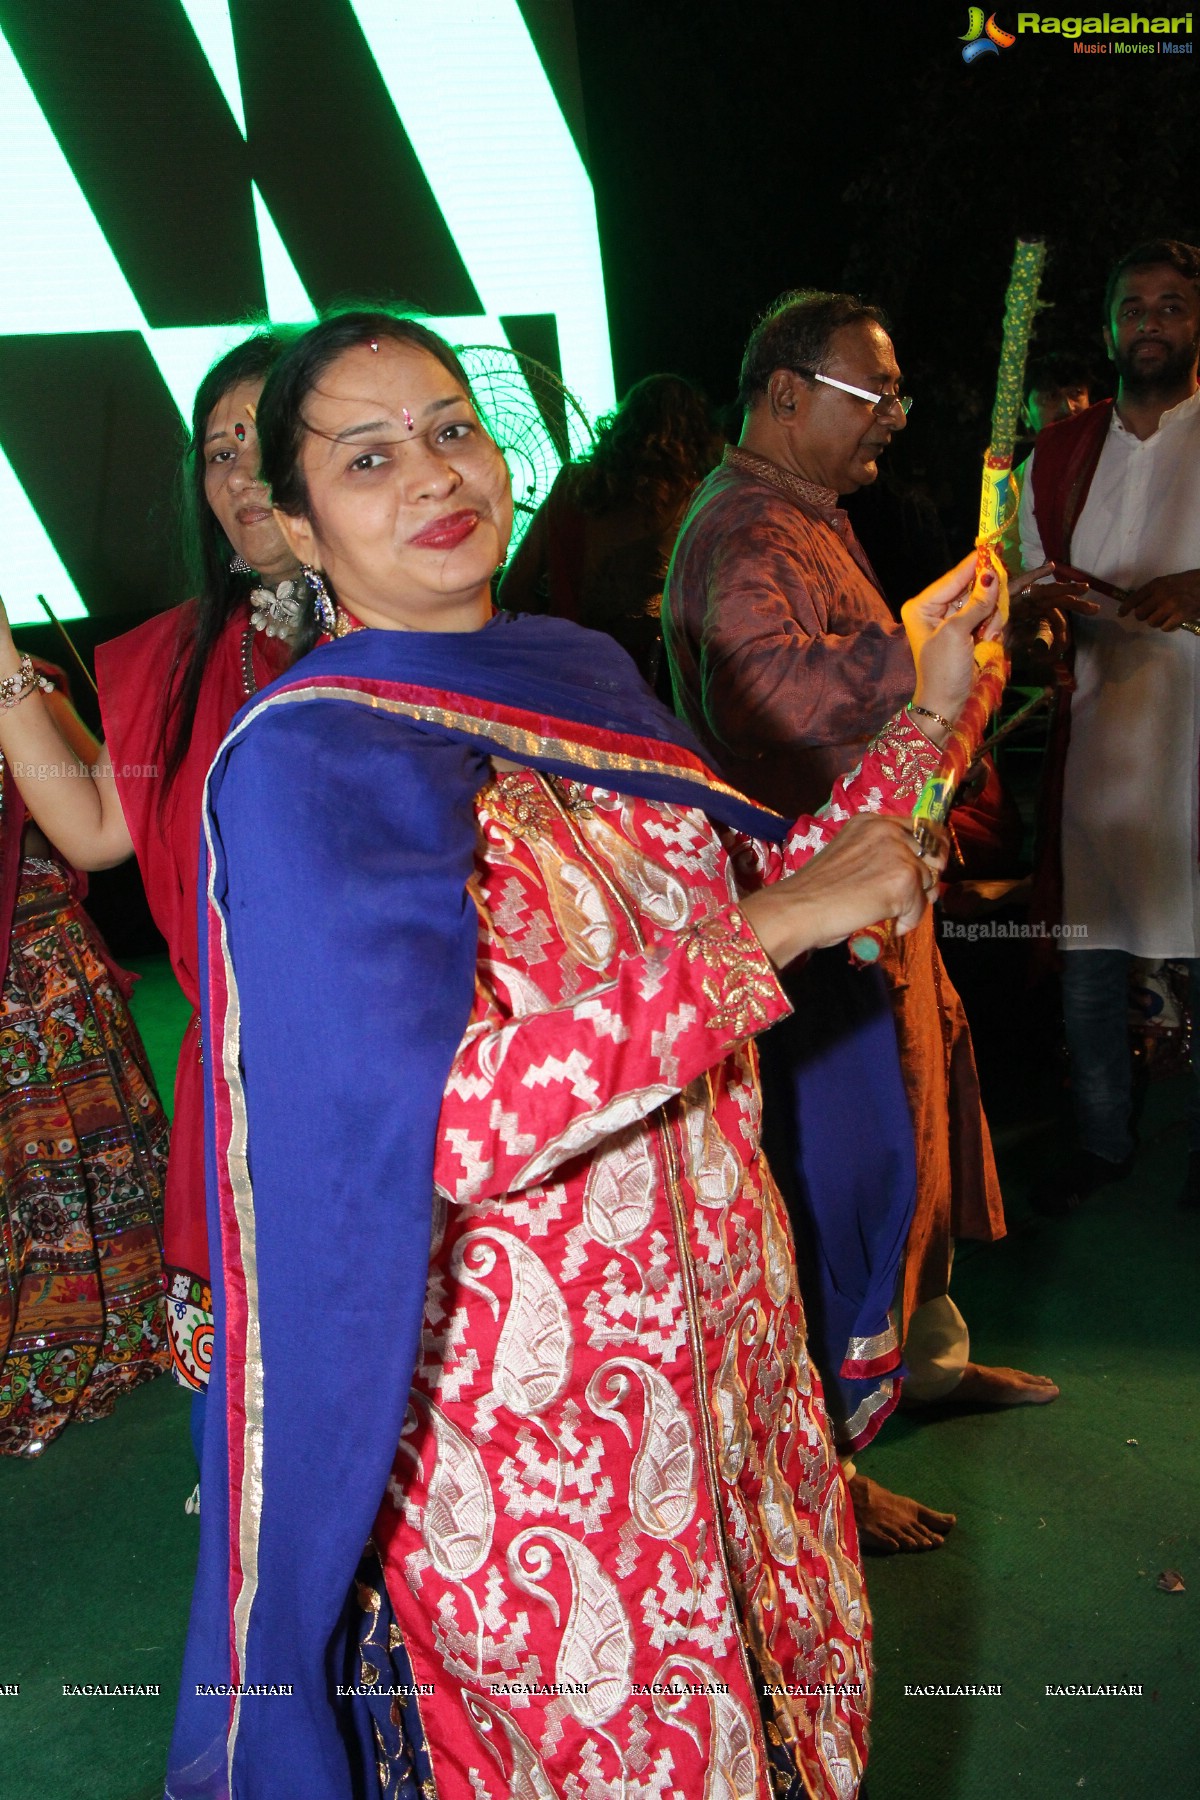 Legend Navratri Utsav 2015 at Imperial Gardens (Day 6), Hyderabad 